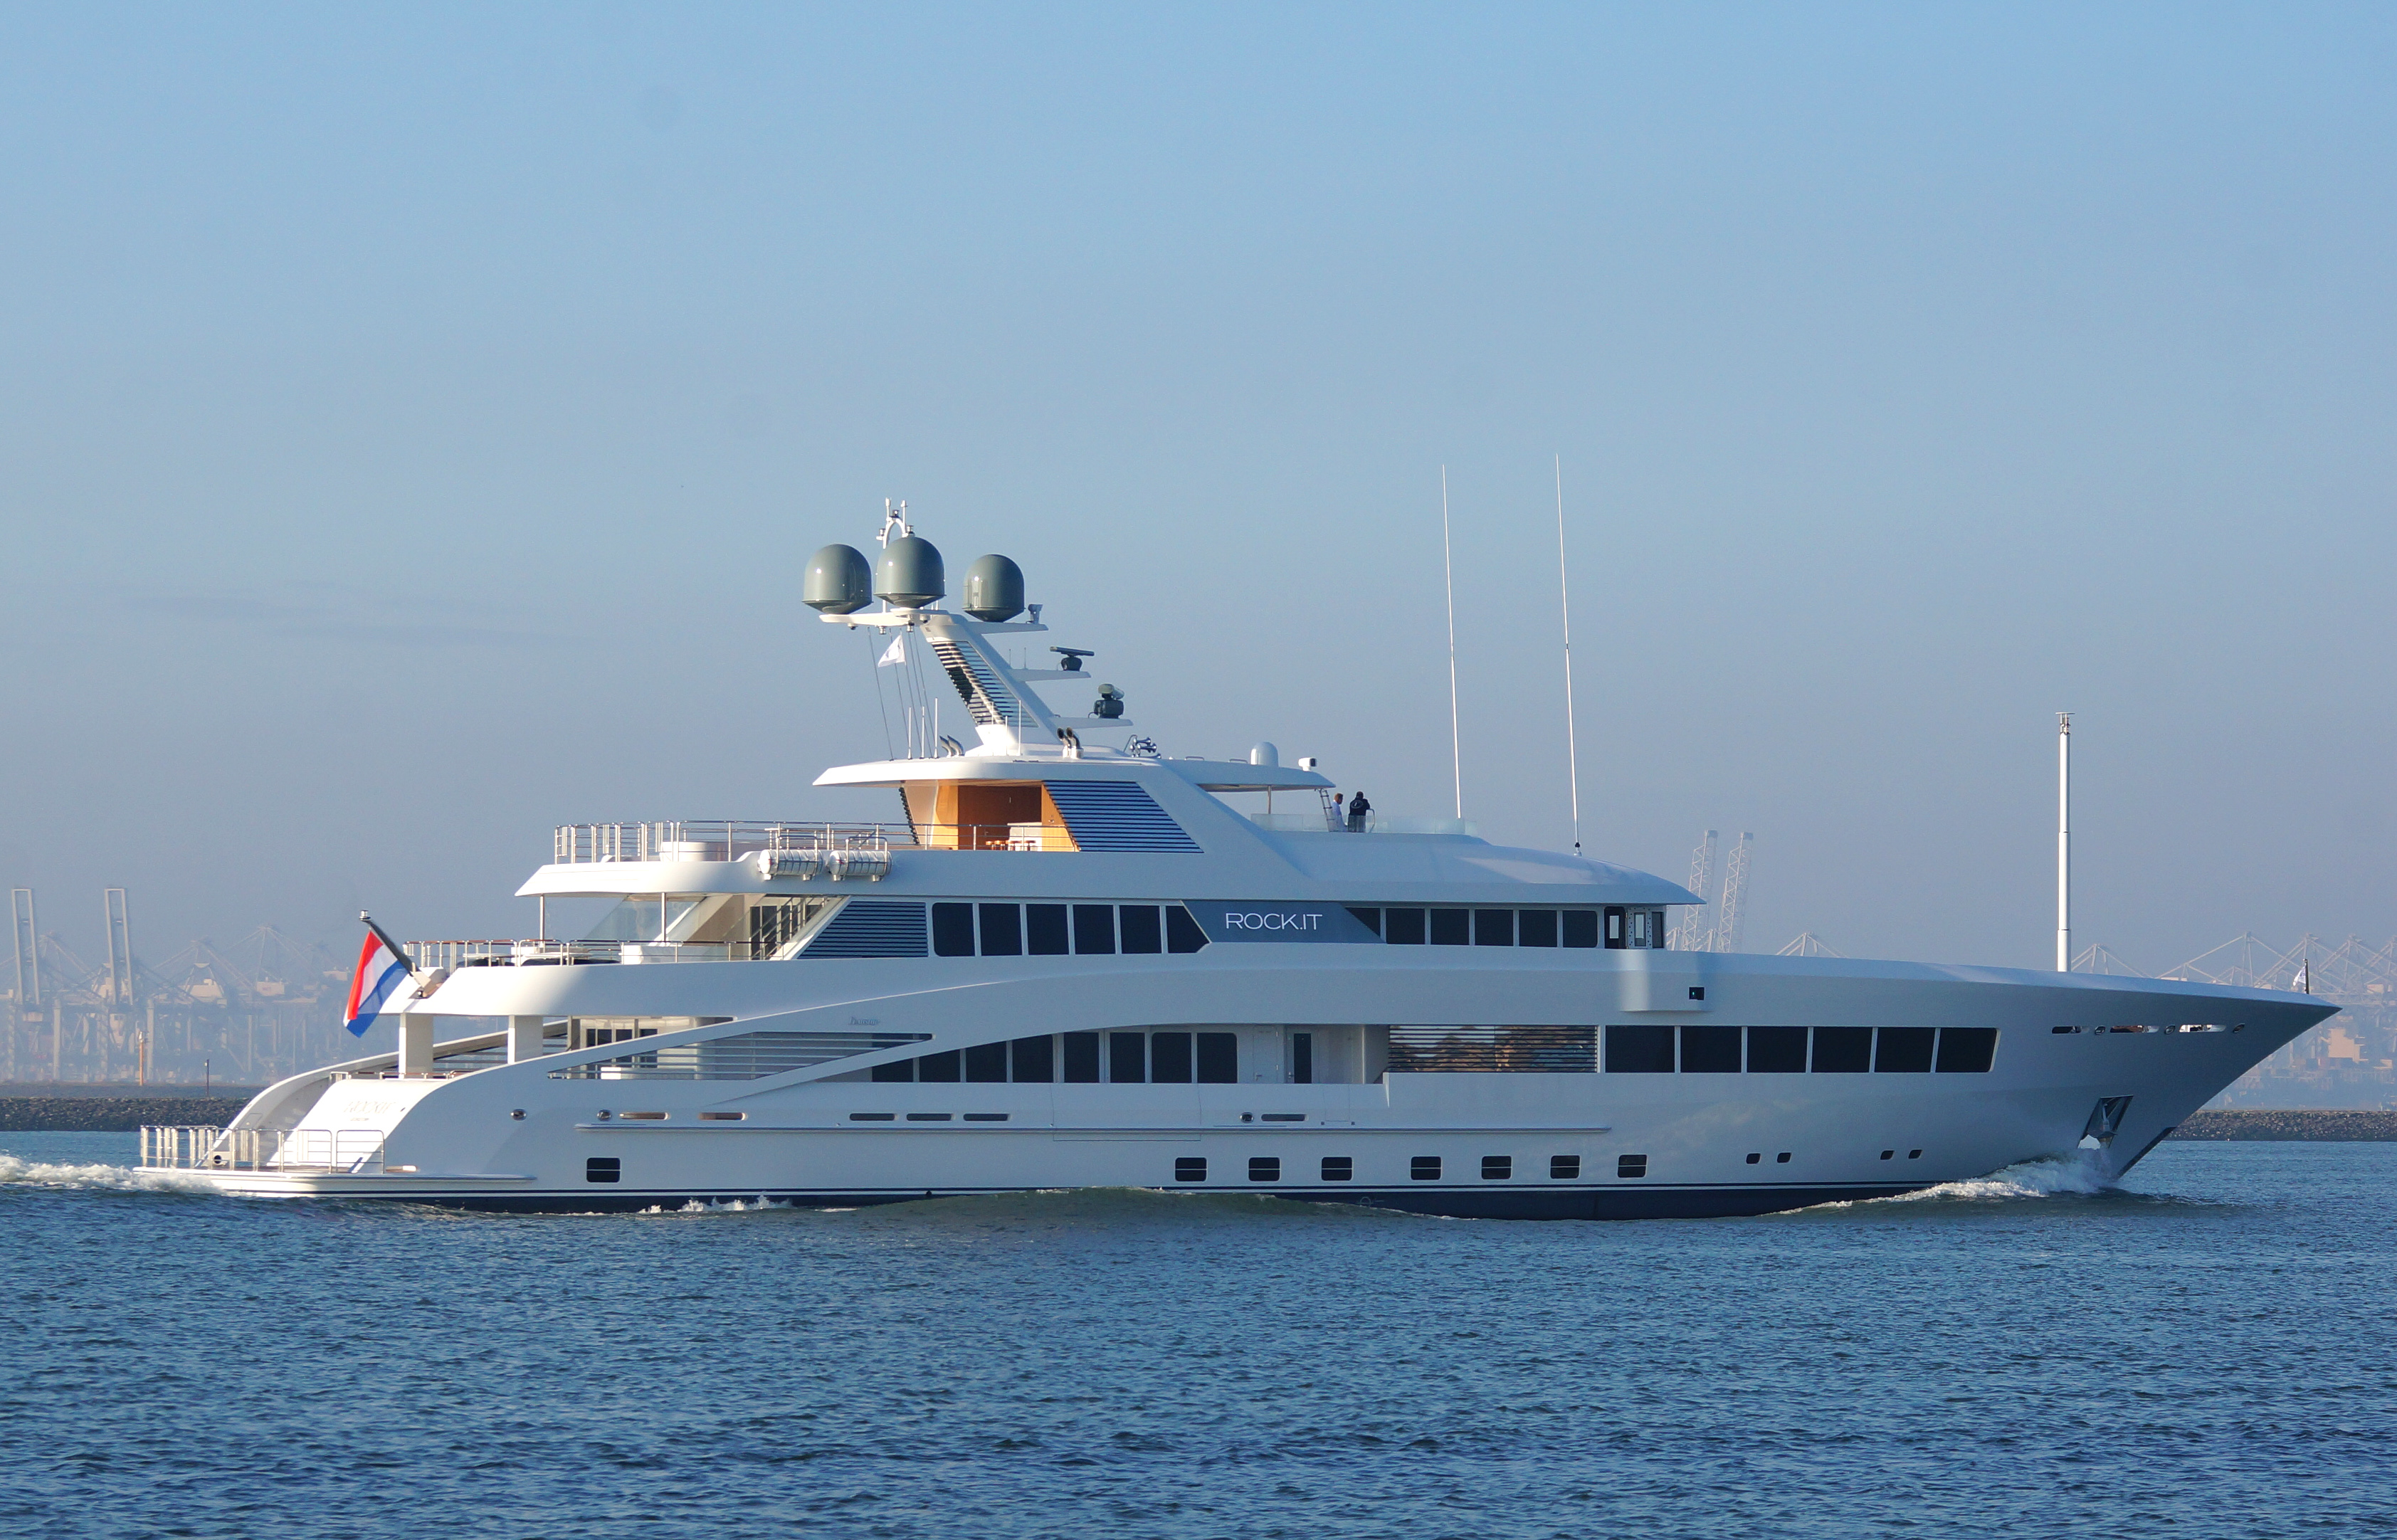 L'utilisateur a acheté un yacht NFT virtuel pour 650 000 $ pour le métaverse